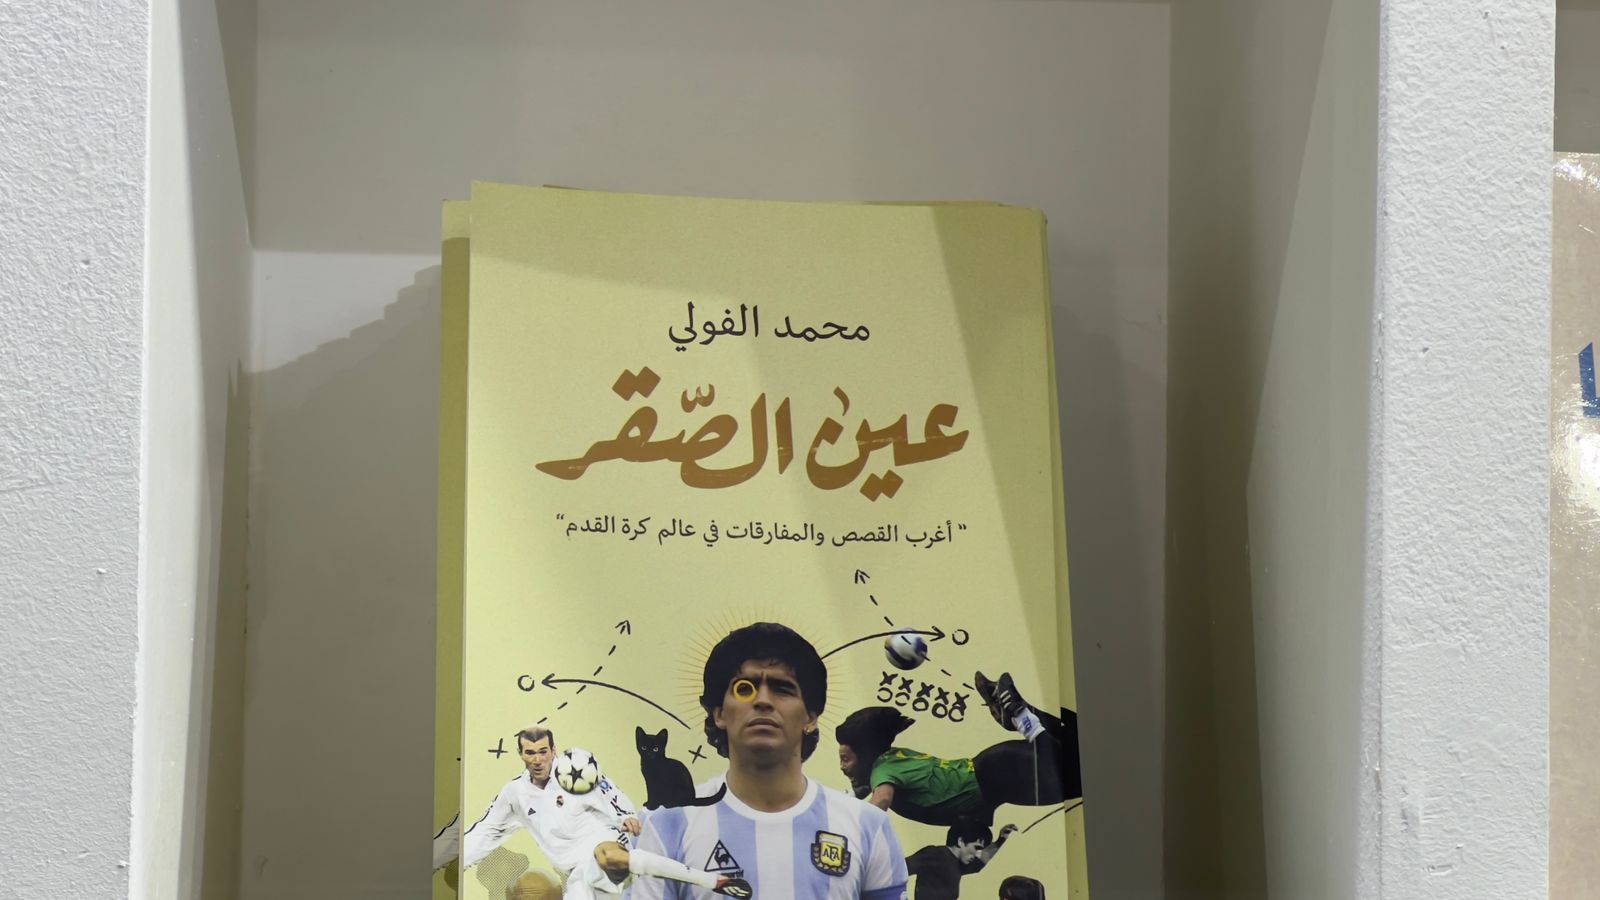 إصدارات دور النشر العربية (8)